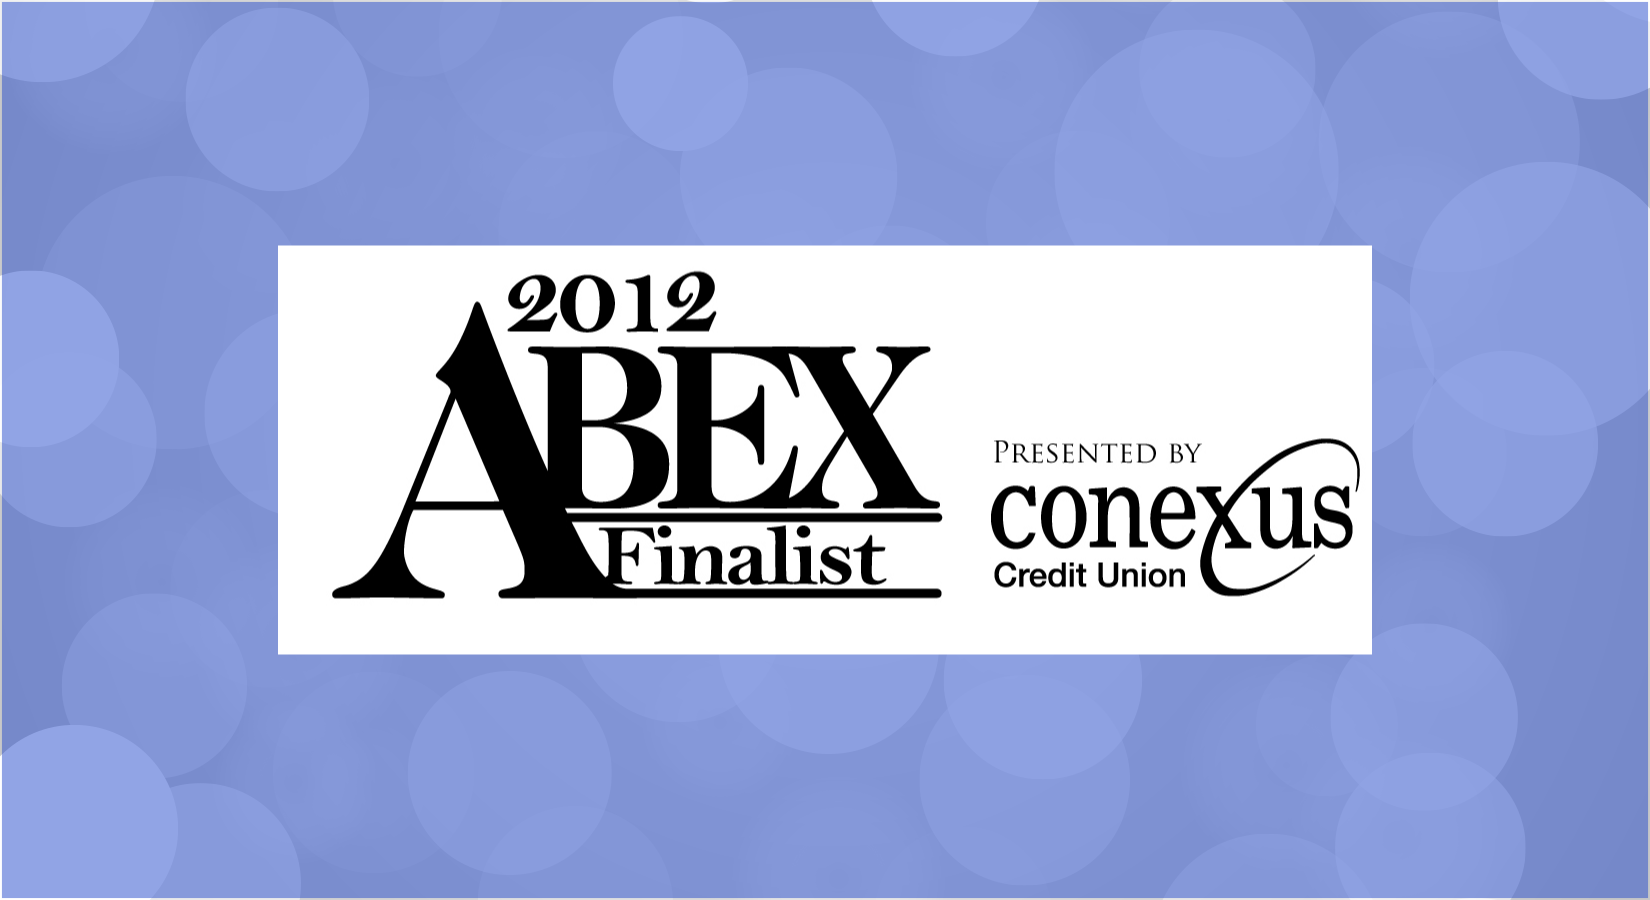 ABEX 2012 Finalist